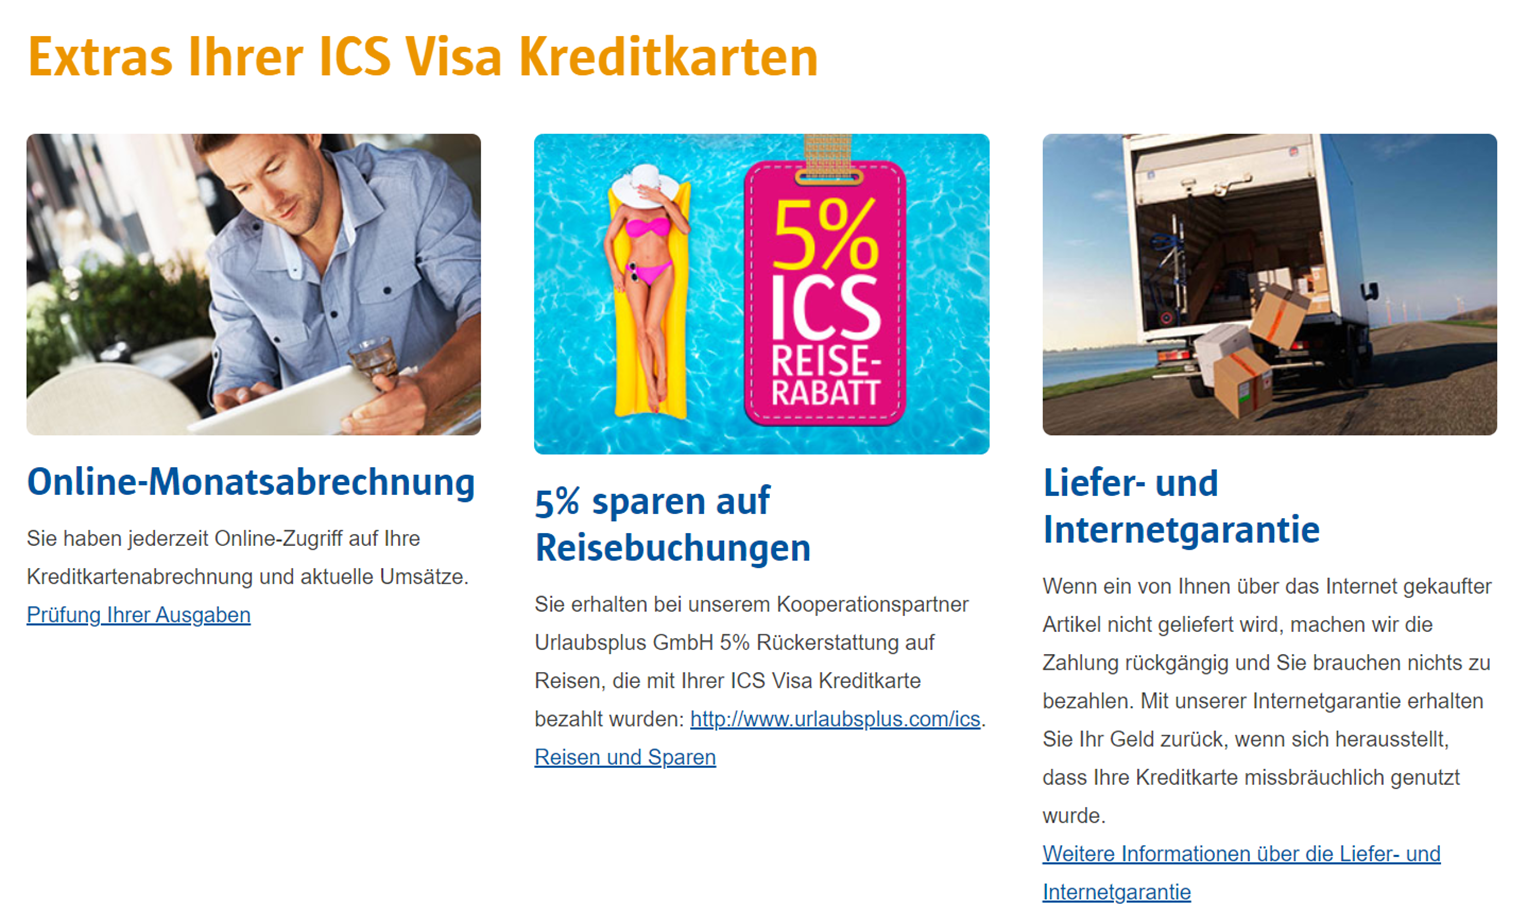 ICS VISA World Card im Test - Vor- und Nachteile der Karte